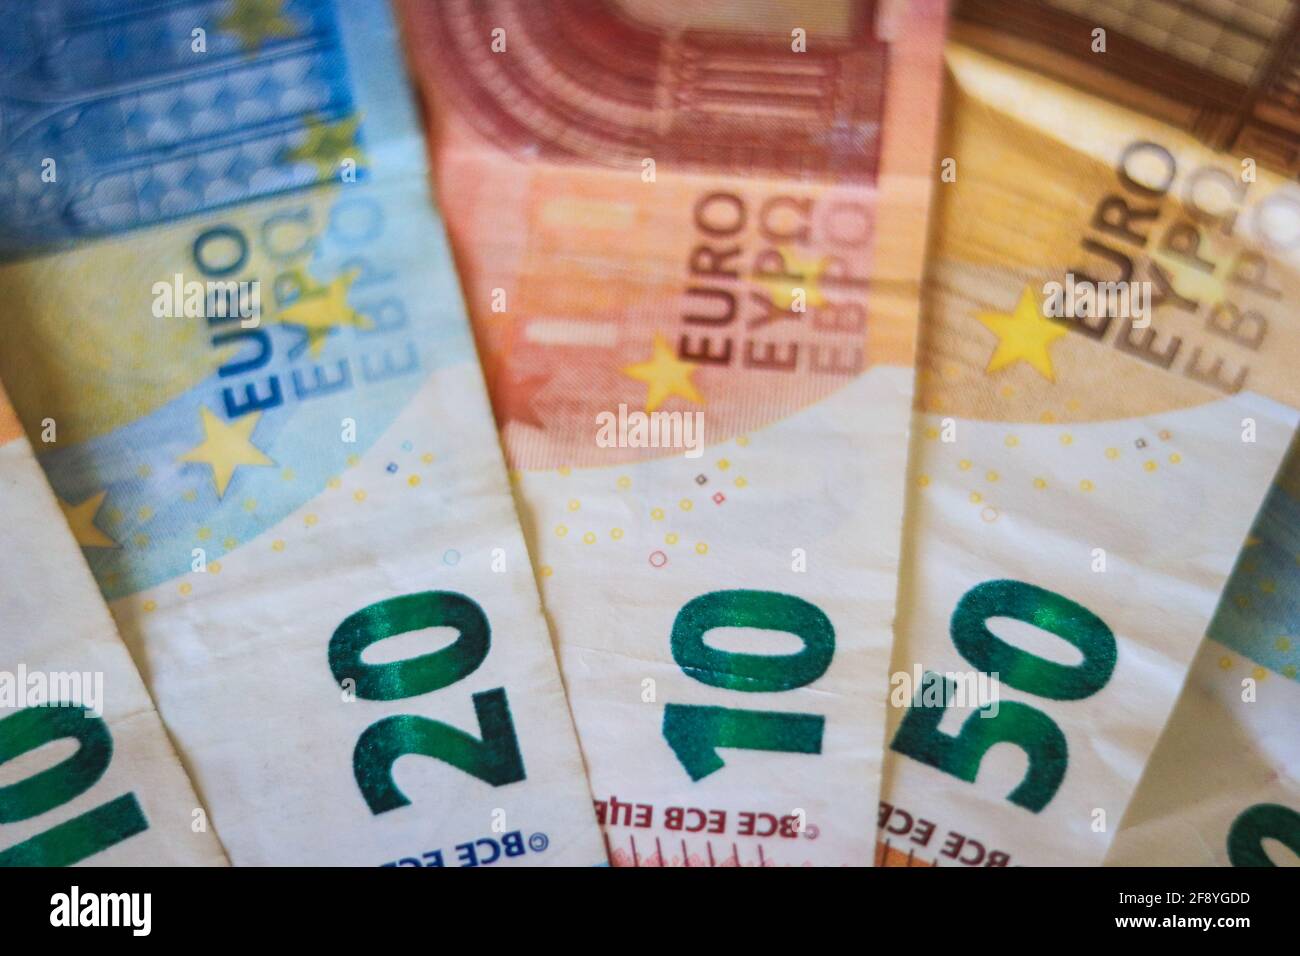 Banconote in euro. Tabella coperta da banconote. Foto Stock